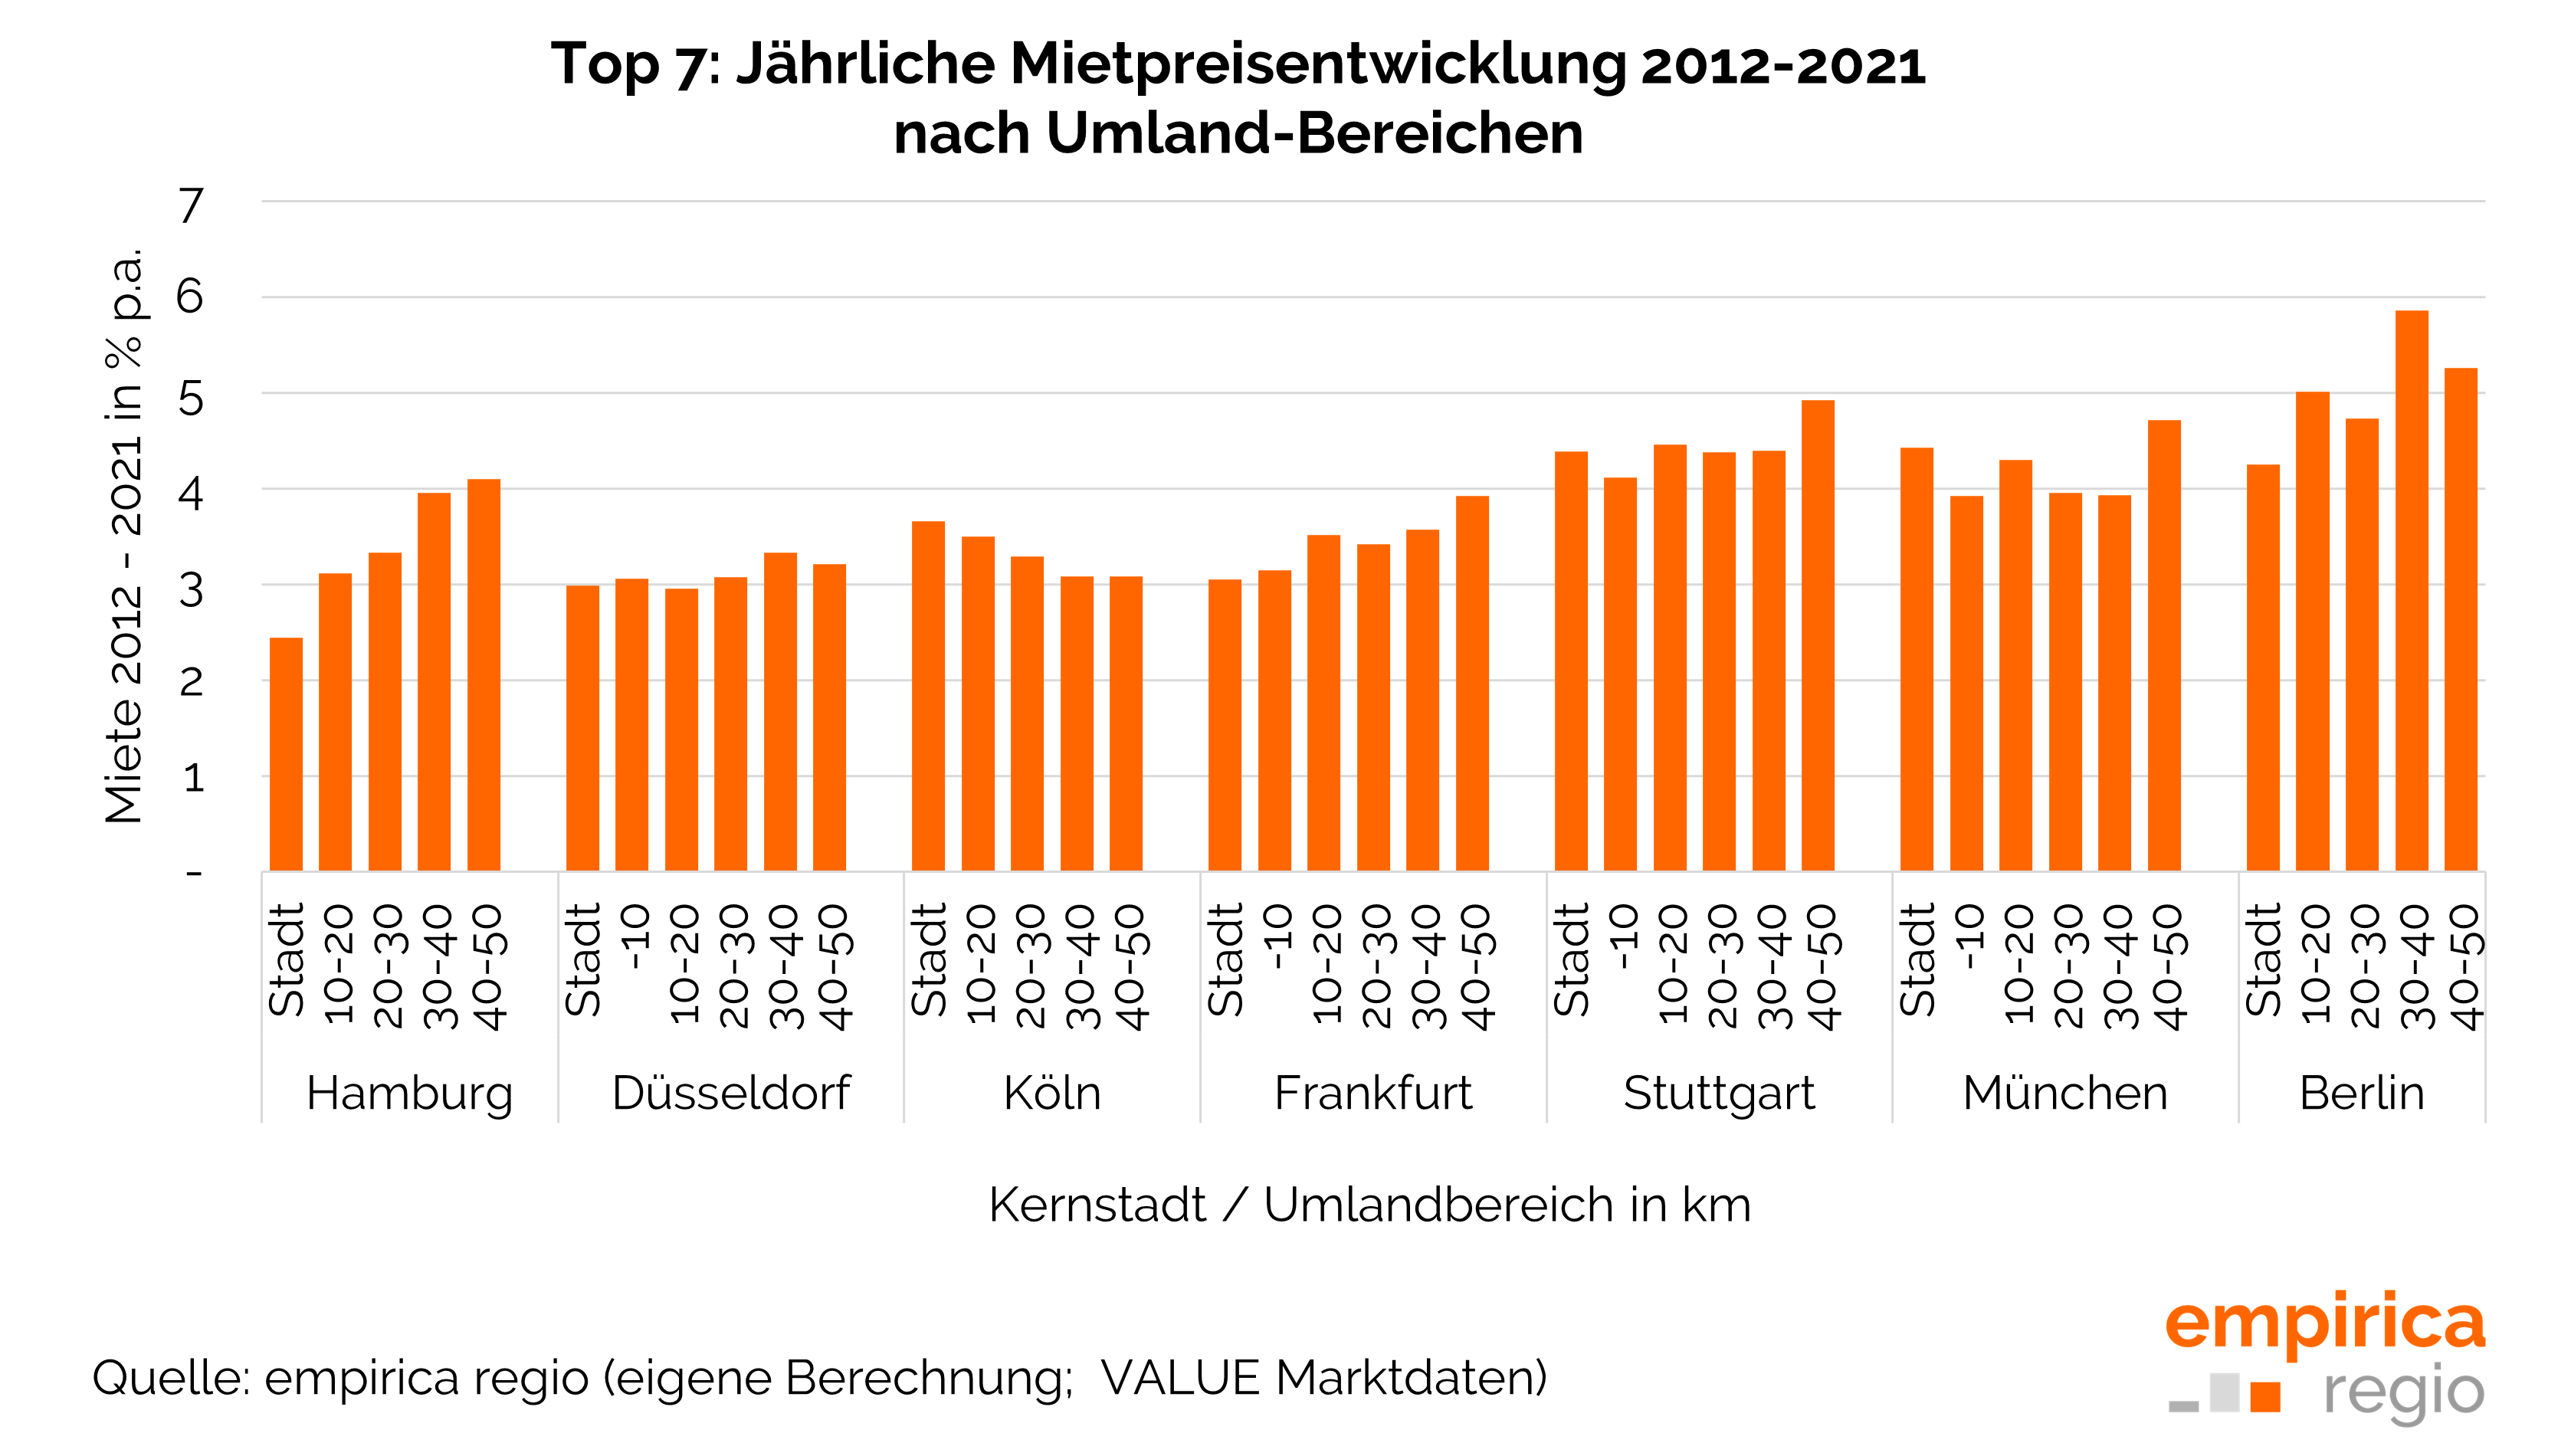 Top 7: Jährliche Mietpreisentwicklung 2012 - 2021 nach Umland-Bereichen im Vergleich